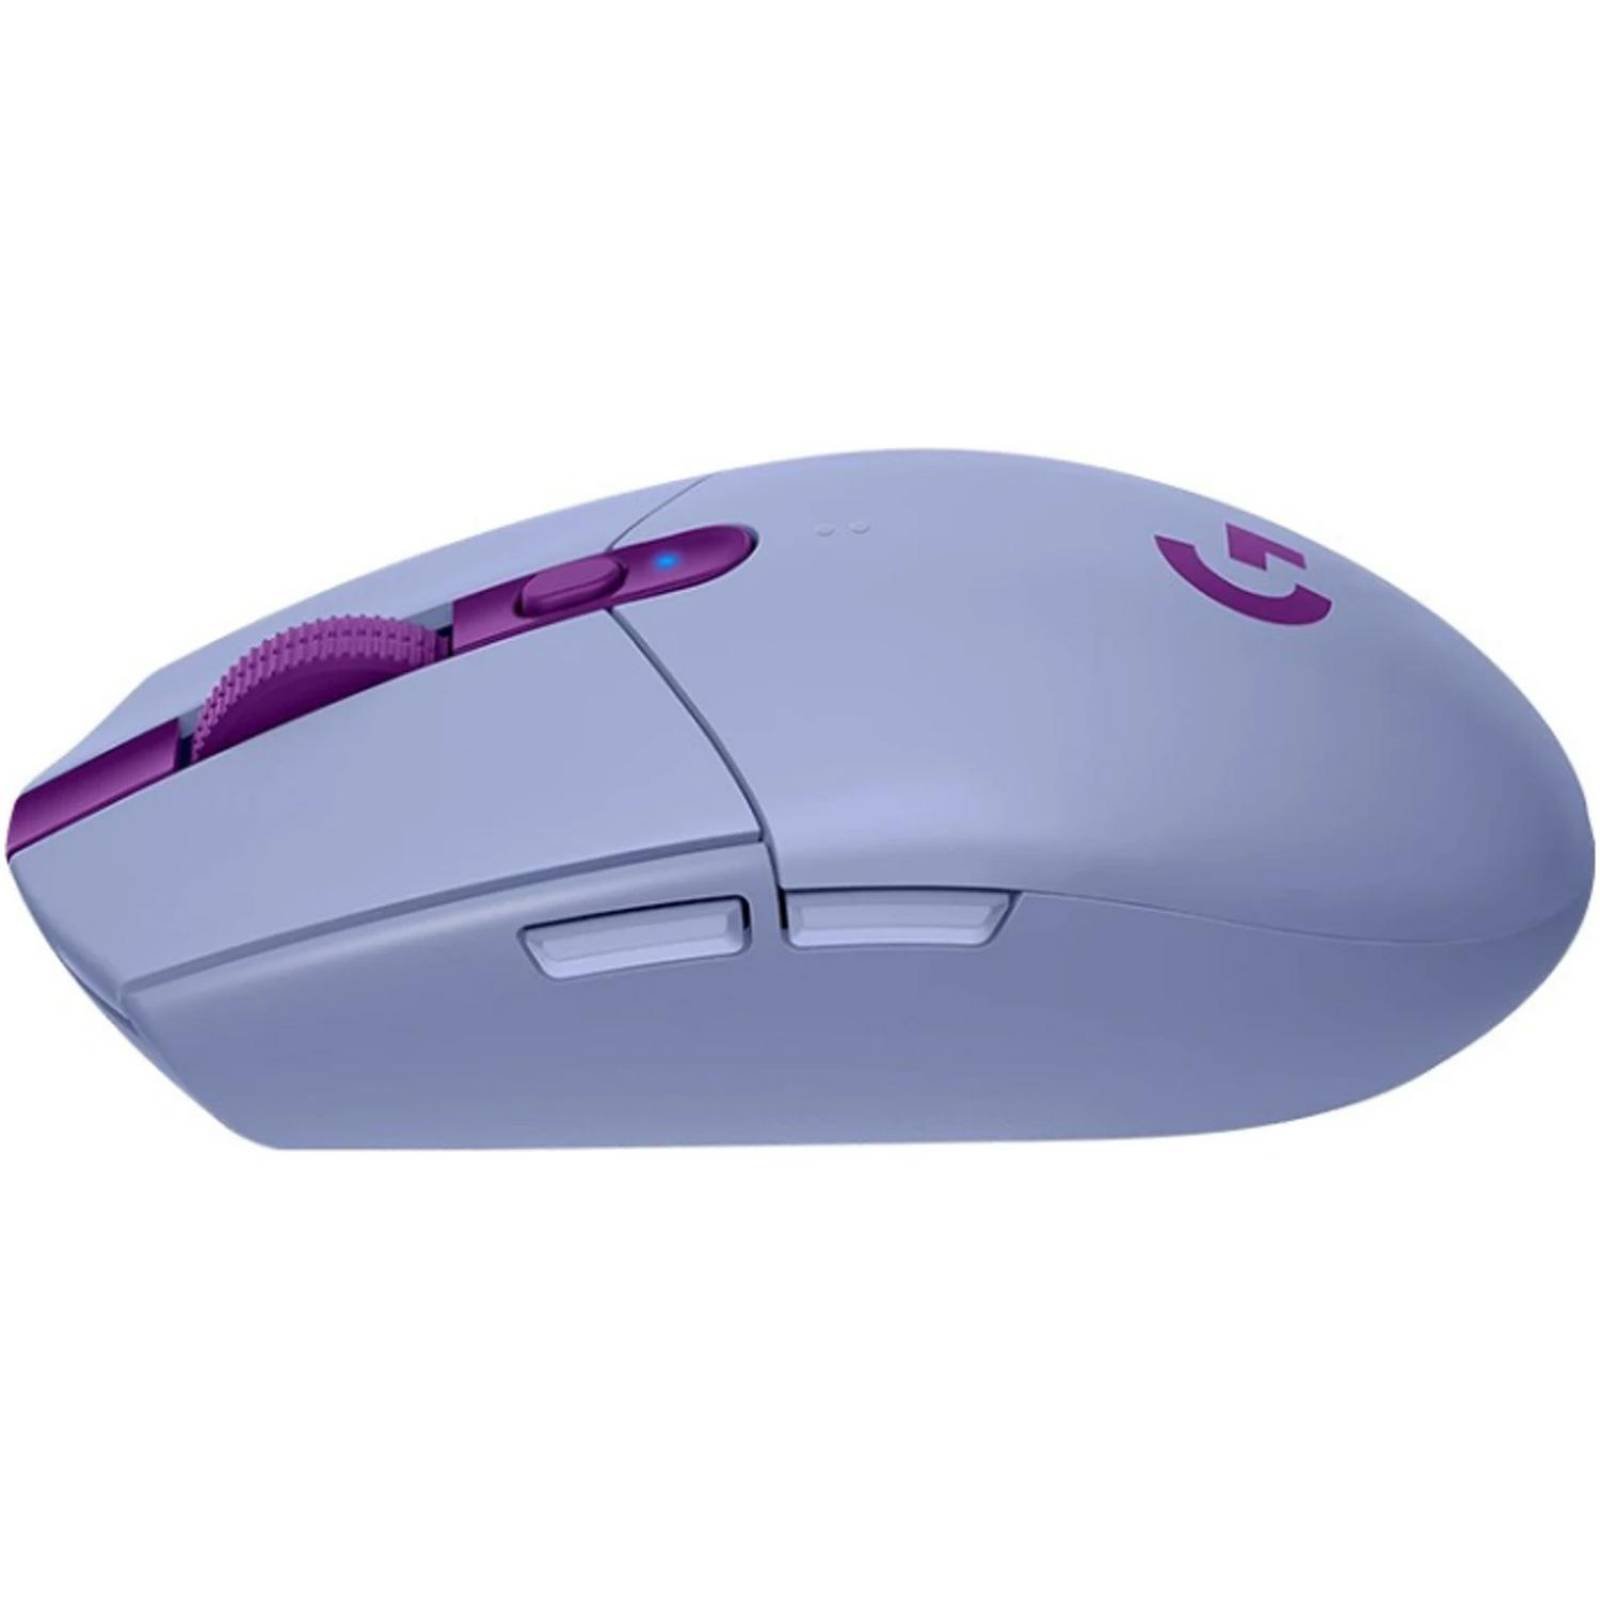 Mouse Gamer LOGITECH G305 Lightspeed 12000 DPI Inalambrico Lila 910-006021 